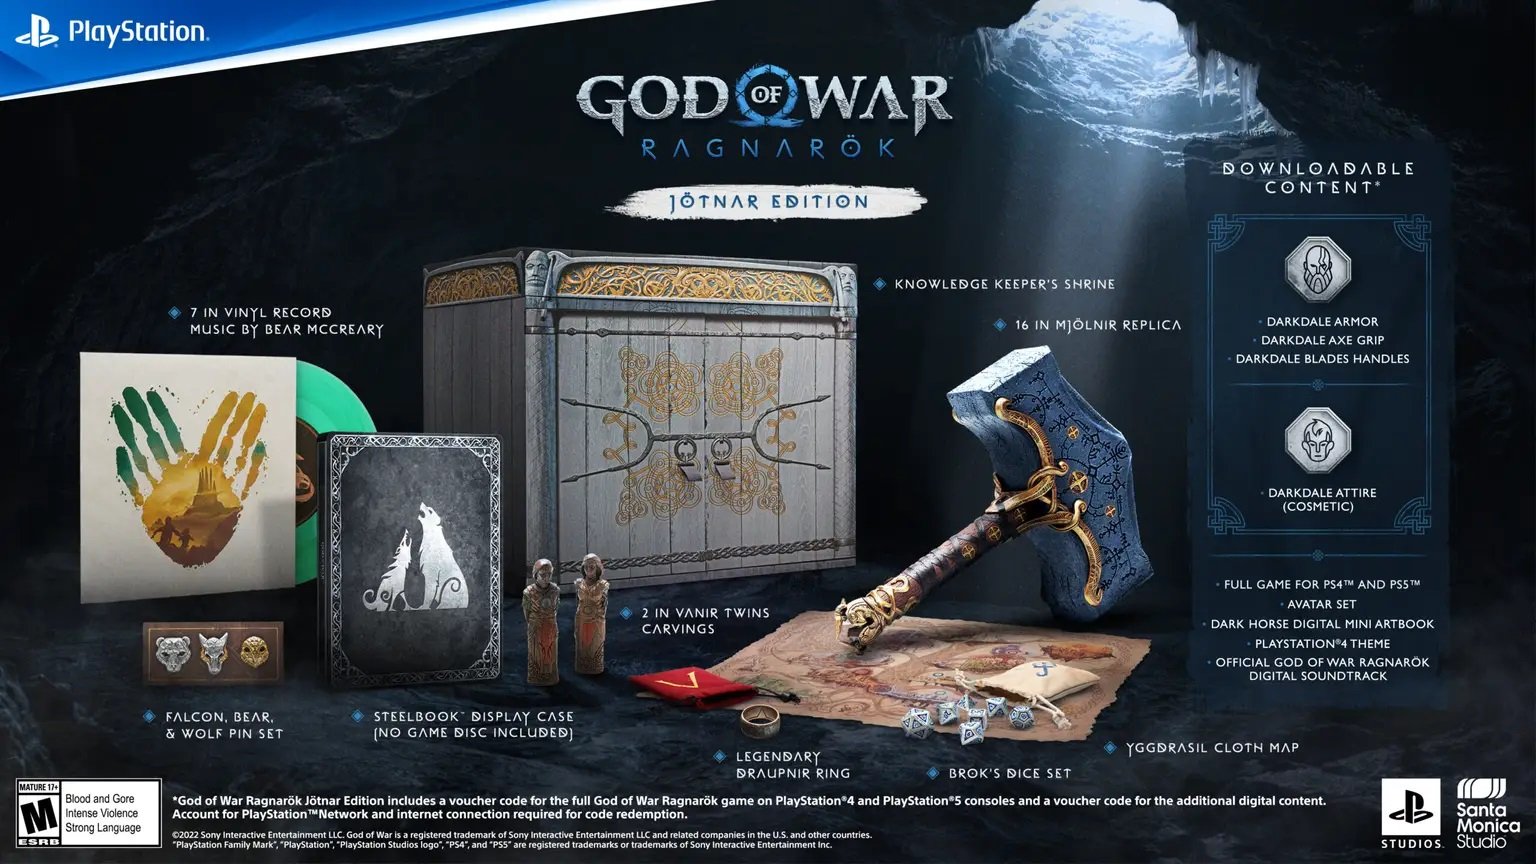 God of War Ragnarök Launch Edition, Playstation 5 